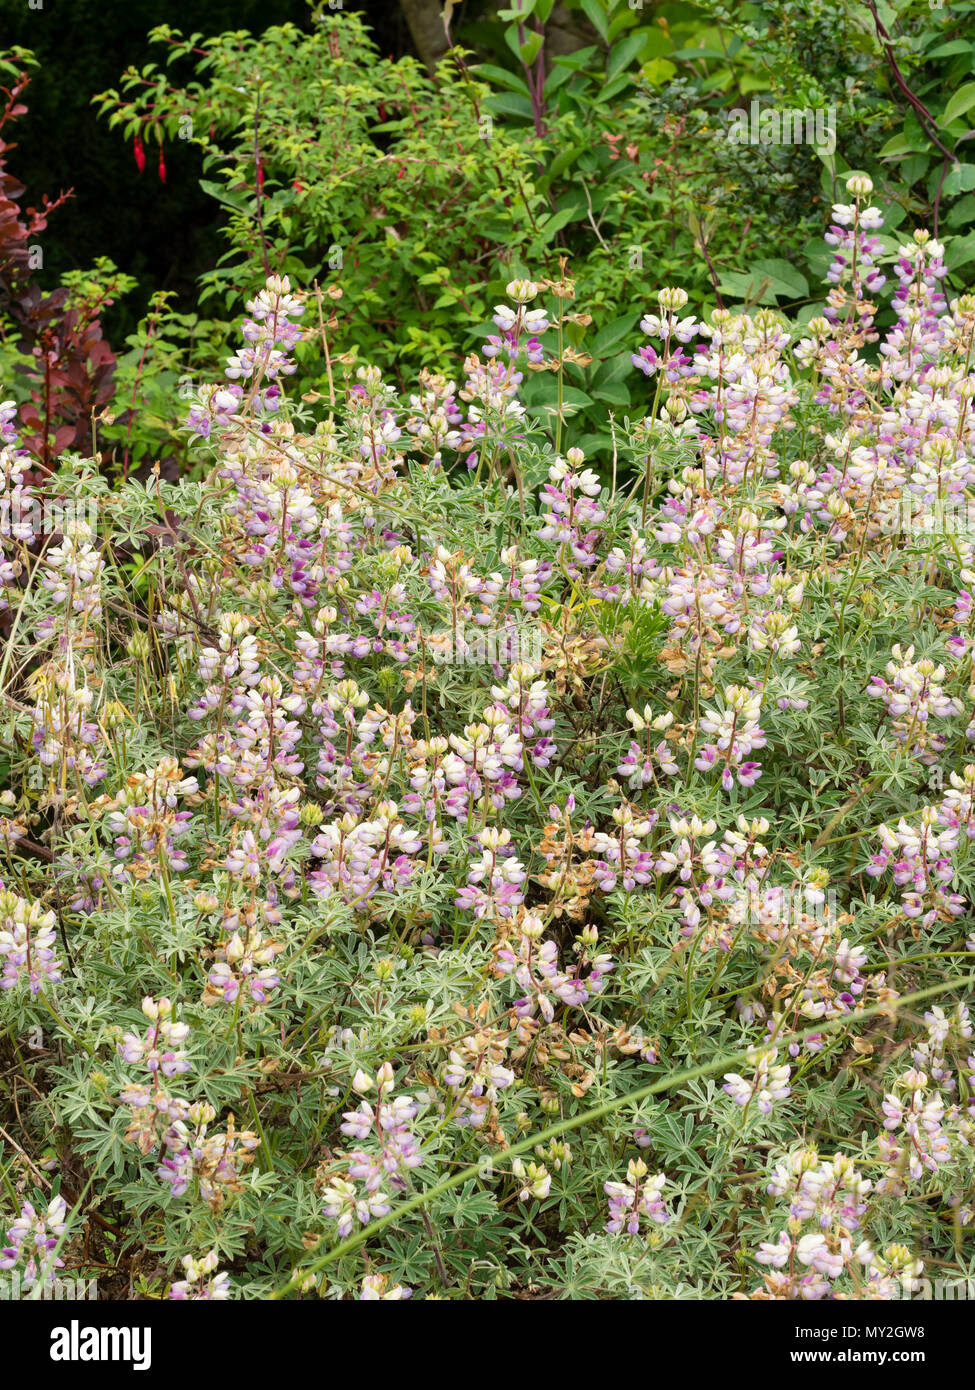 Silbriges Laub und Spitzen der roten, weißen und violetten Blüten der Chamisso-preis bush Lupine, Campanula chamissonis Stockfoto